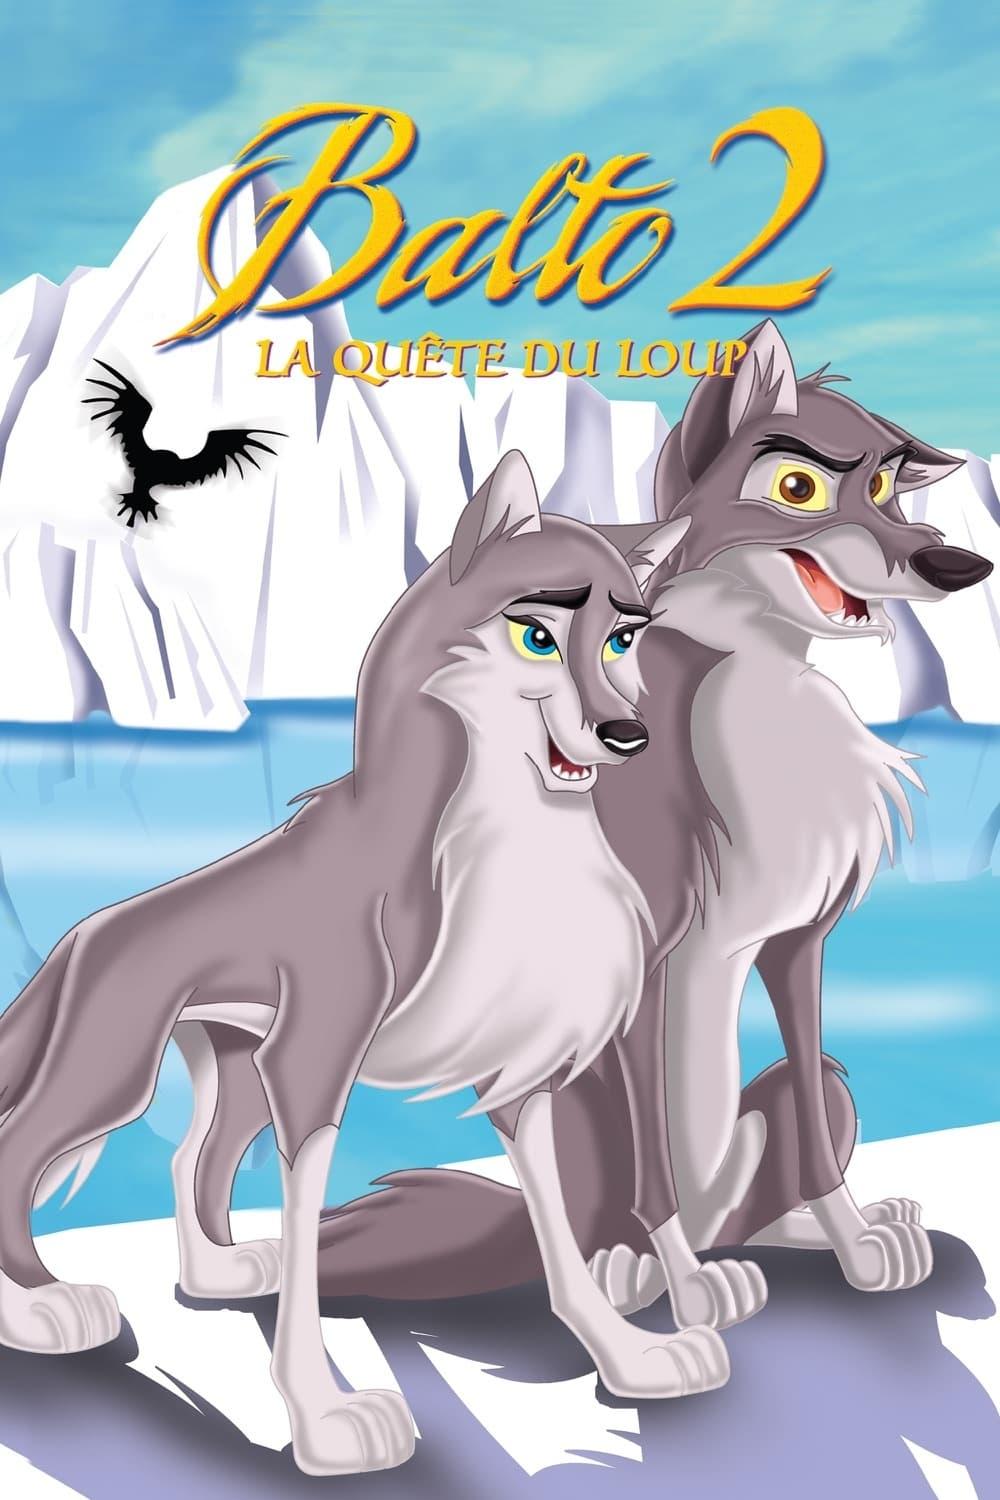 Balto 2 : La quête du loup est-il disponible sur Netflix ou autre ?